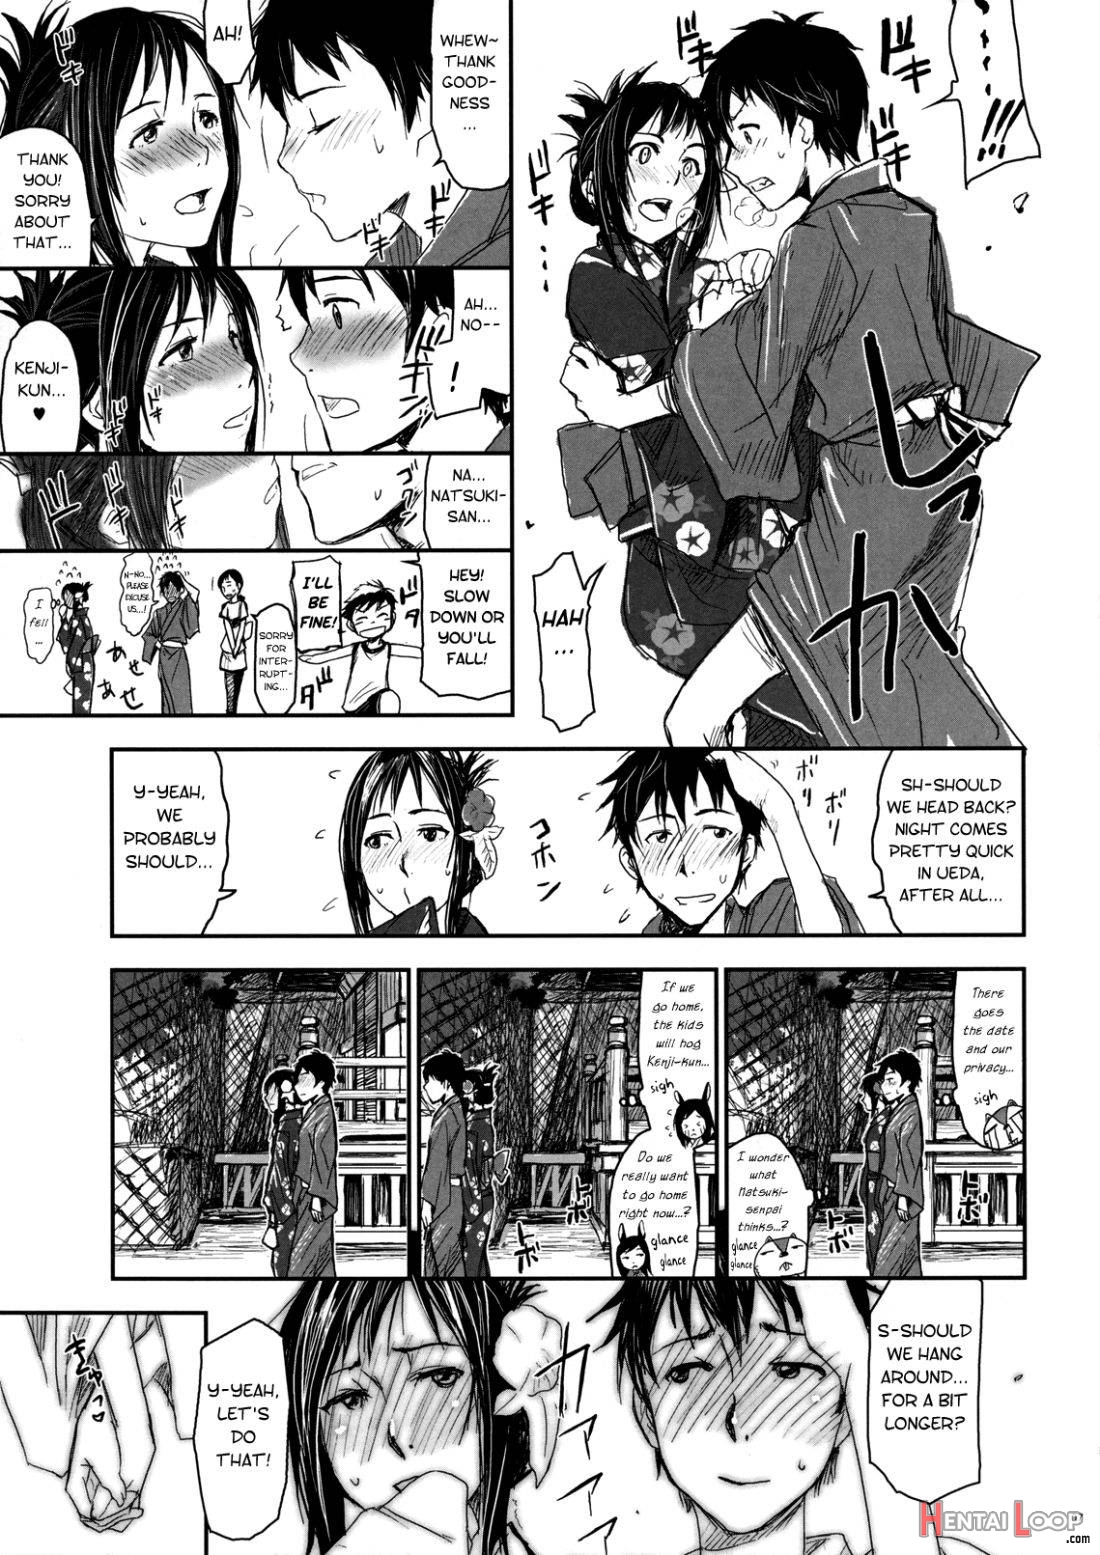 Natsu Ikusa Matsuri 2 page 6